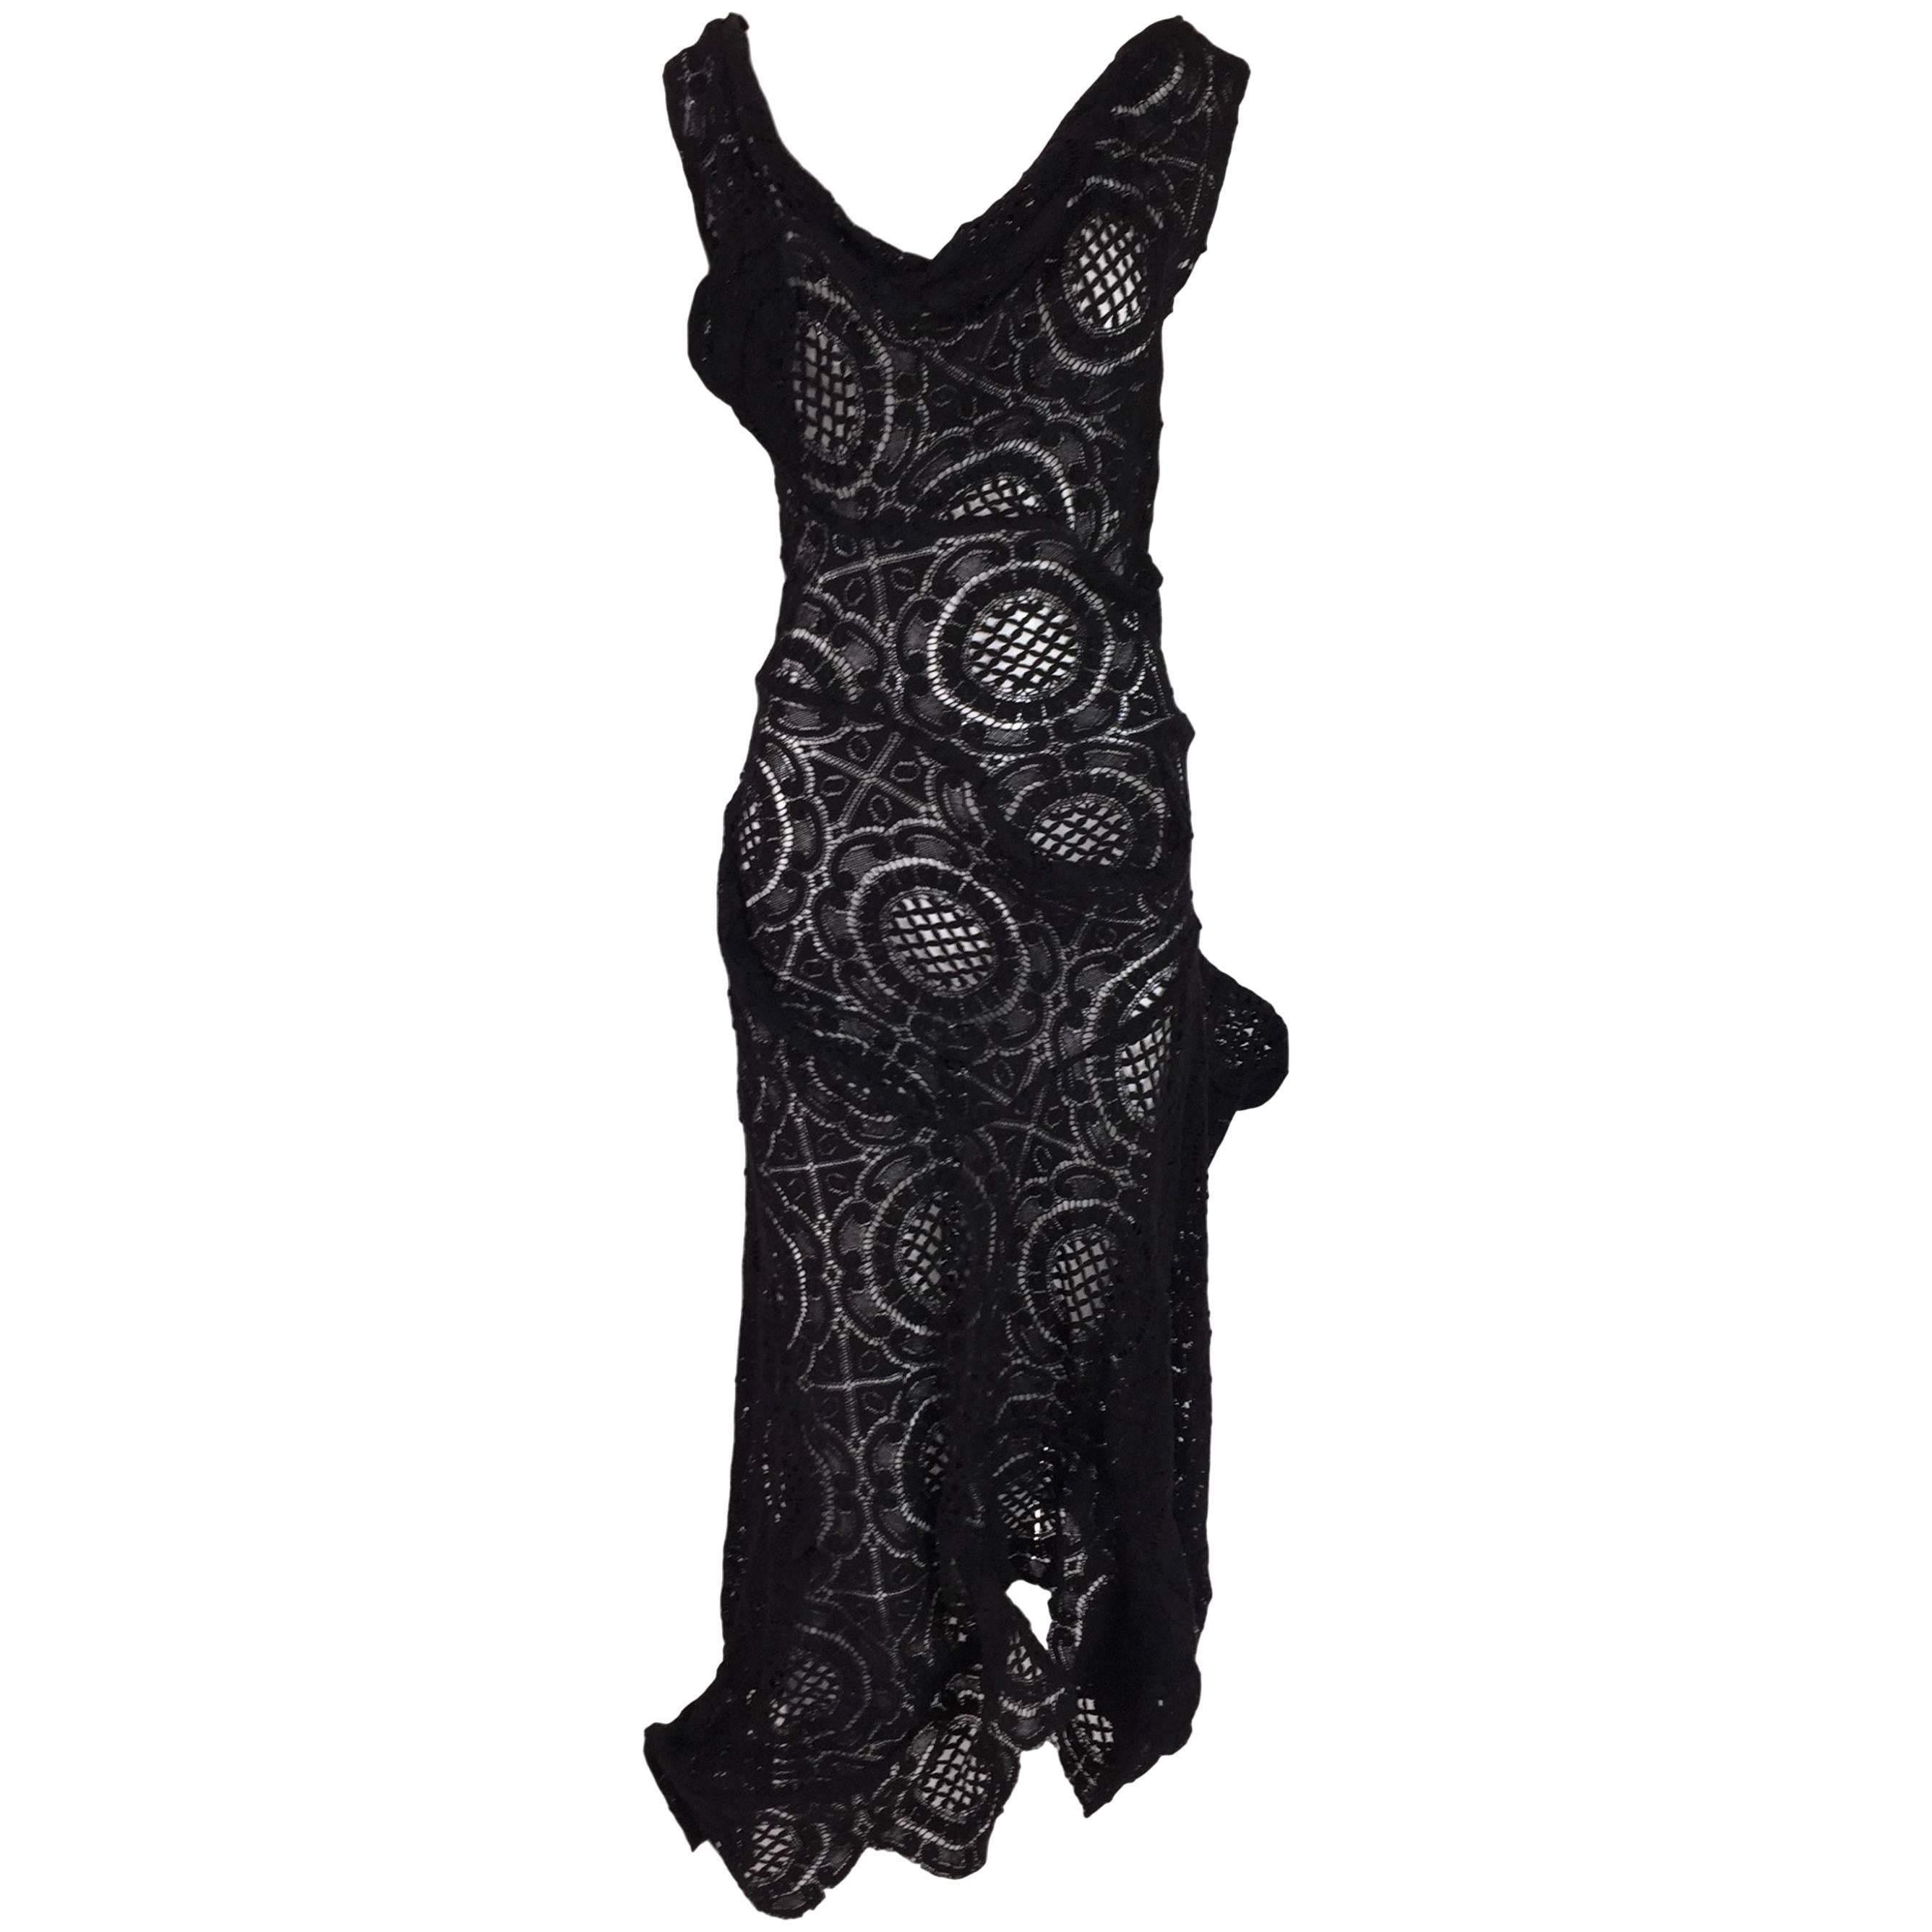 S/S 2002 Vivienne Westwood Couture OOAK Sheer Black Avant Garde Dress